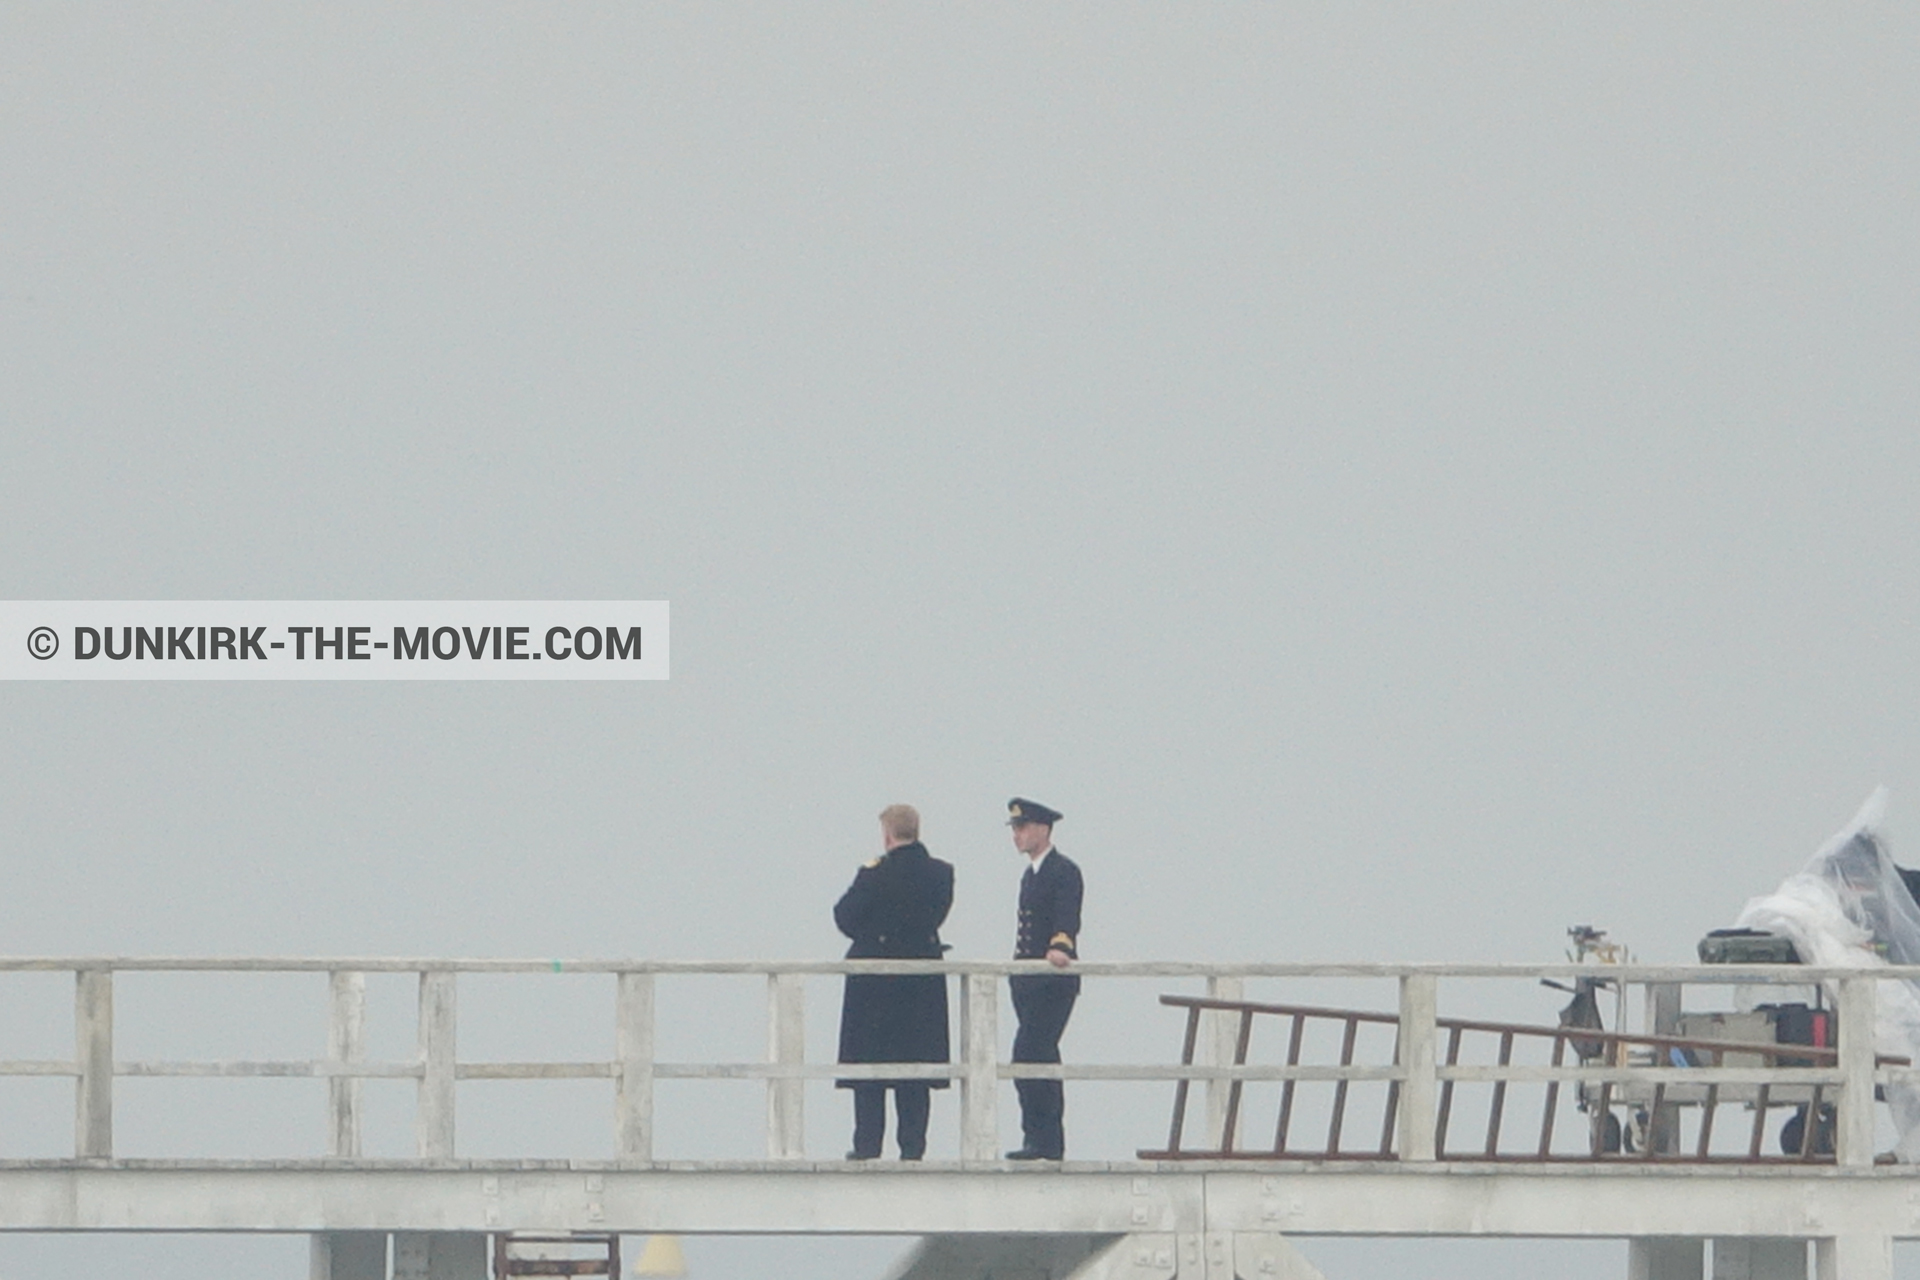 Fotos con actor, cielo gris, muelle del ESTE, Kenneth Branagh,  durante el rodaje de la película Dunkerque de Nolan